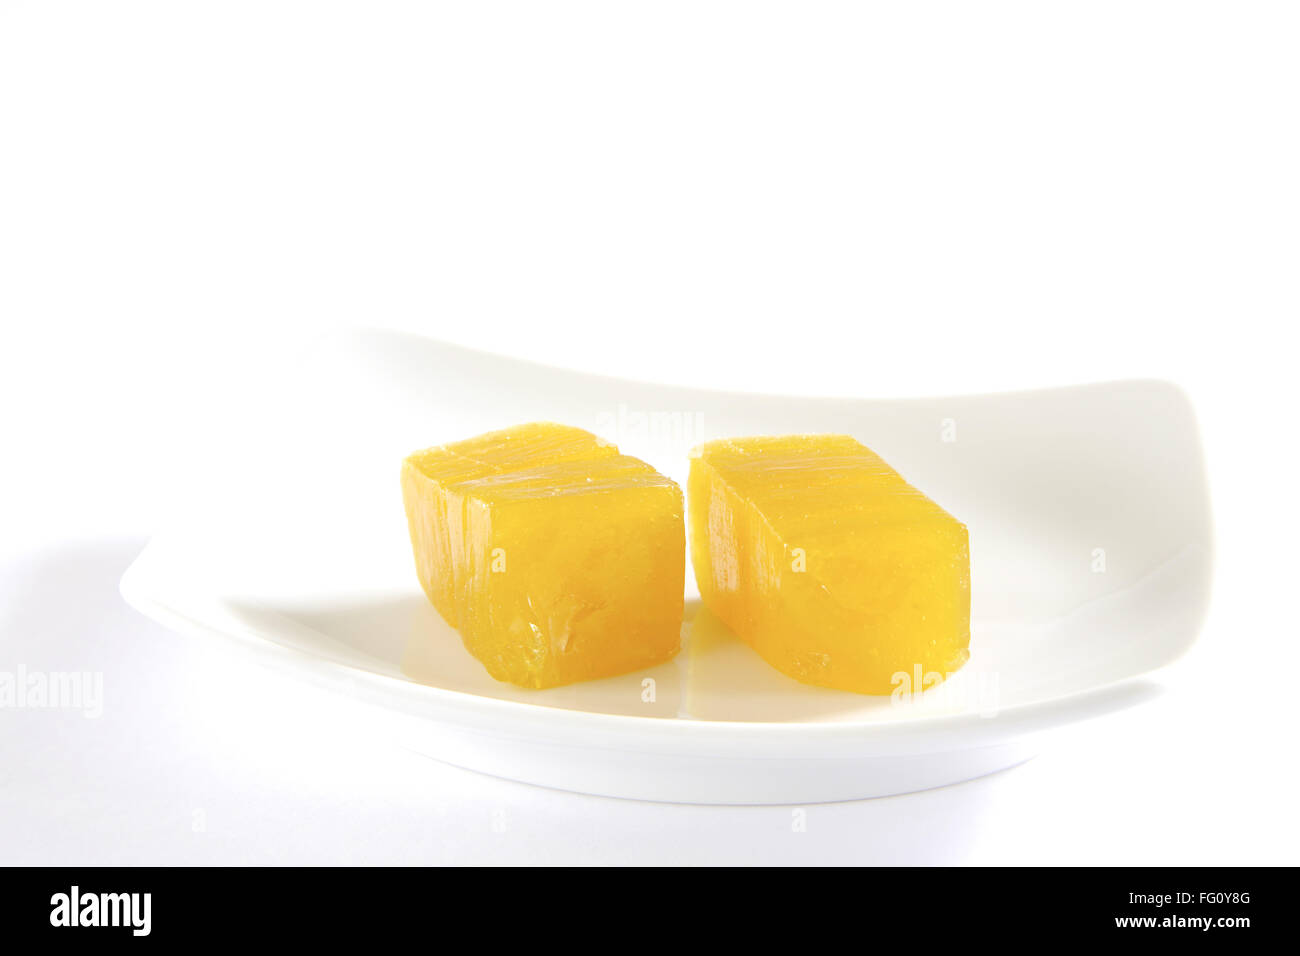 Cucina indiana o ambapali amavat succo essiccato di manghi in forma di foglio piano servito sulla piastra Foto Stock